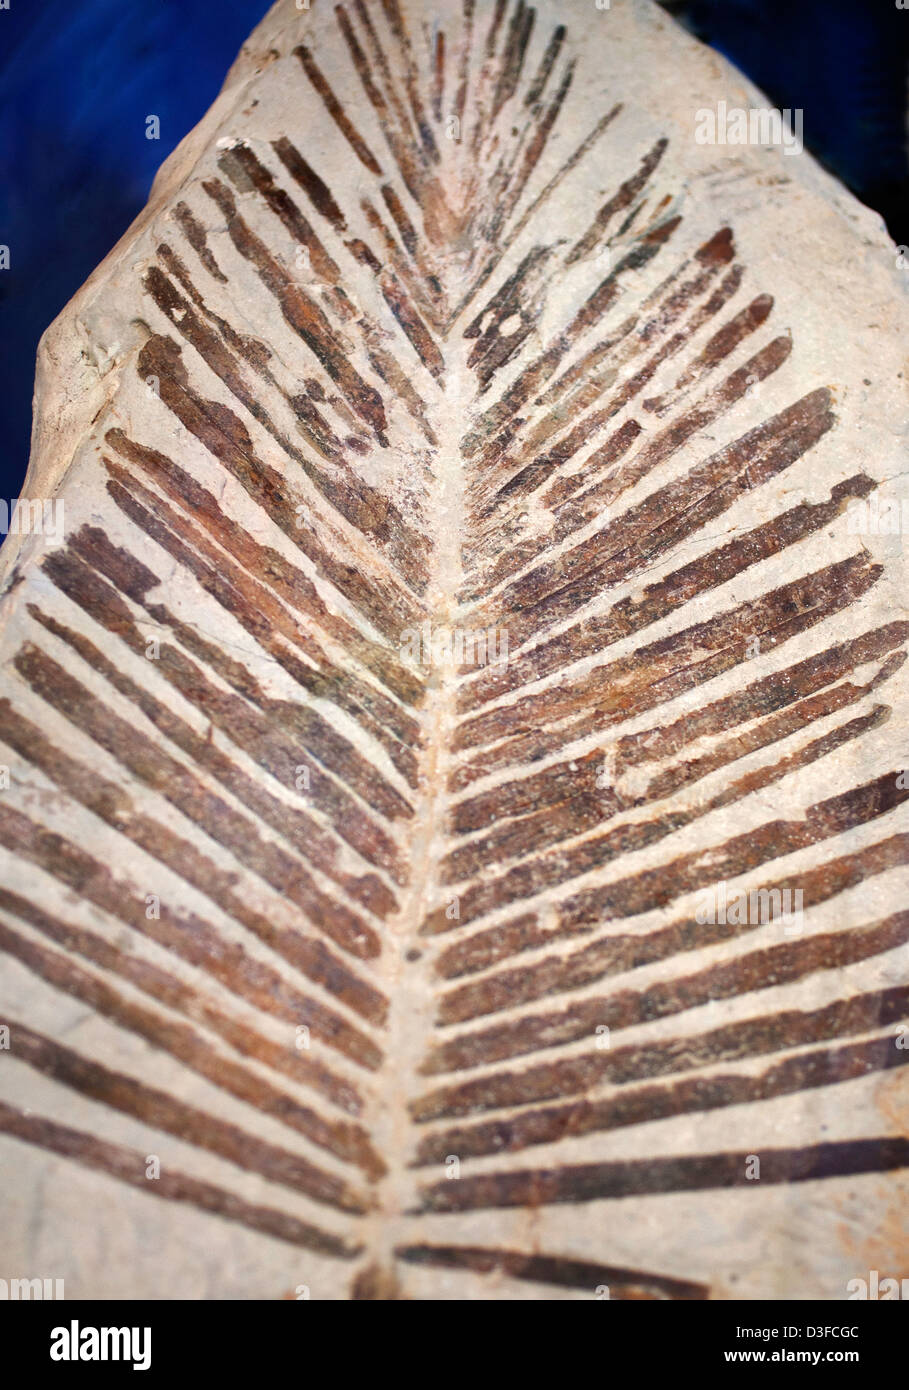 Cycad leaf impression fossil Stock Photo